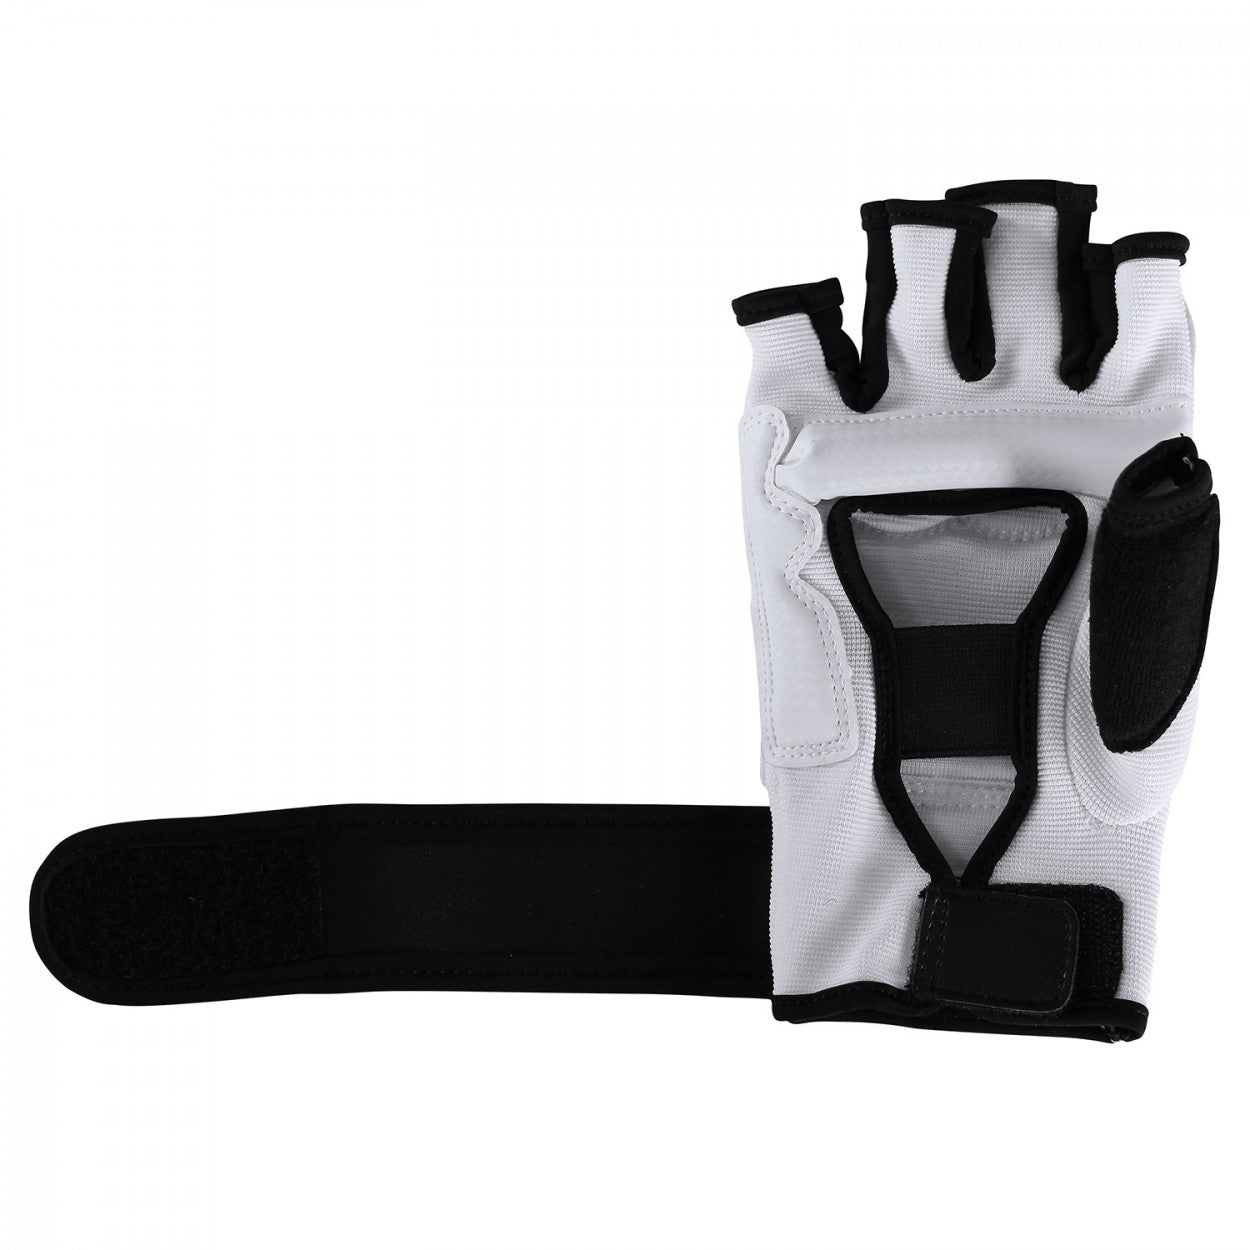 Προστατευτικά Χεριών adidas FIGHTING Taekwondo WT, Άσπρο/Μαύρο